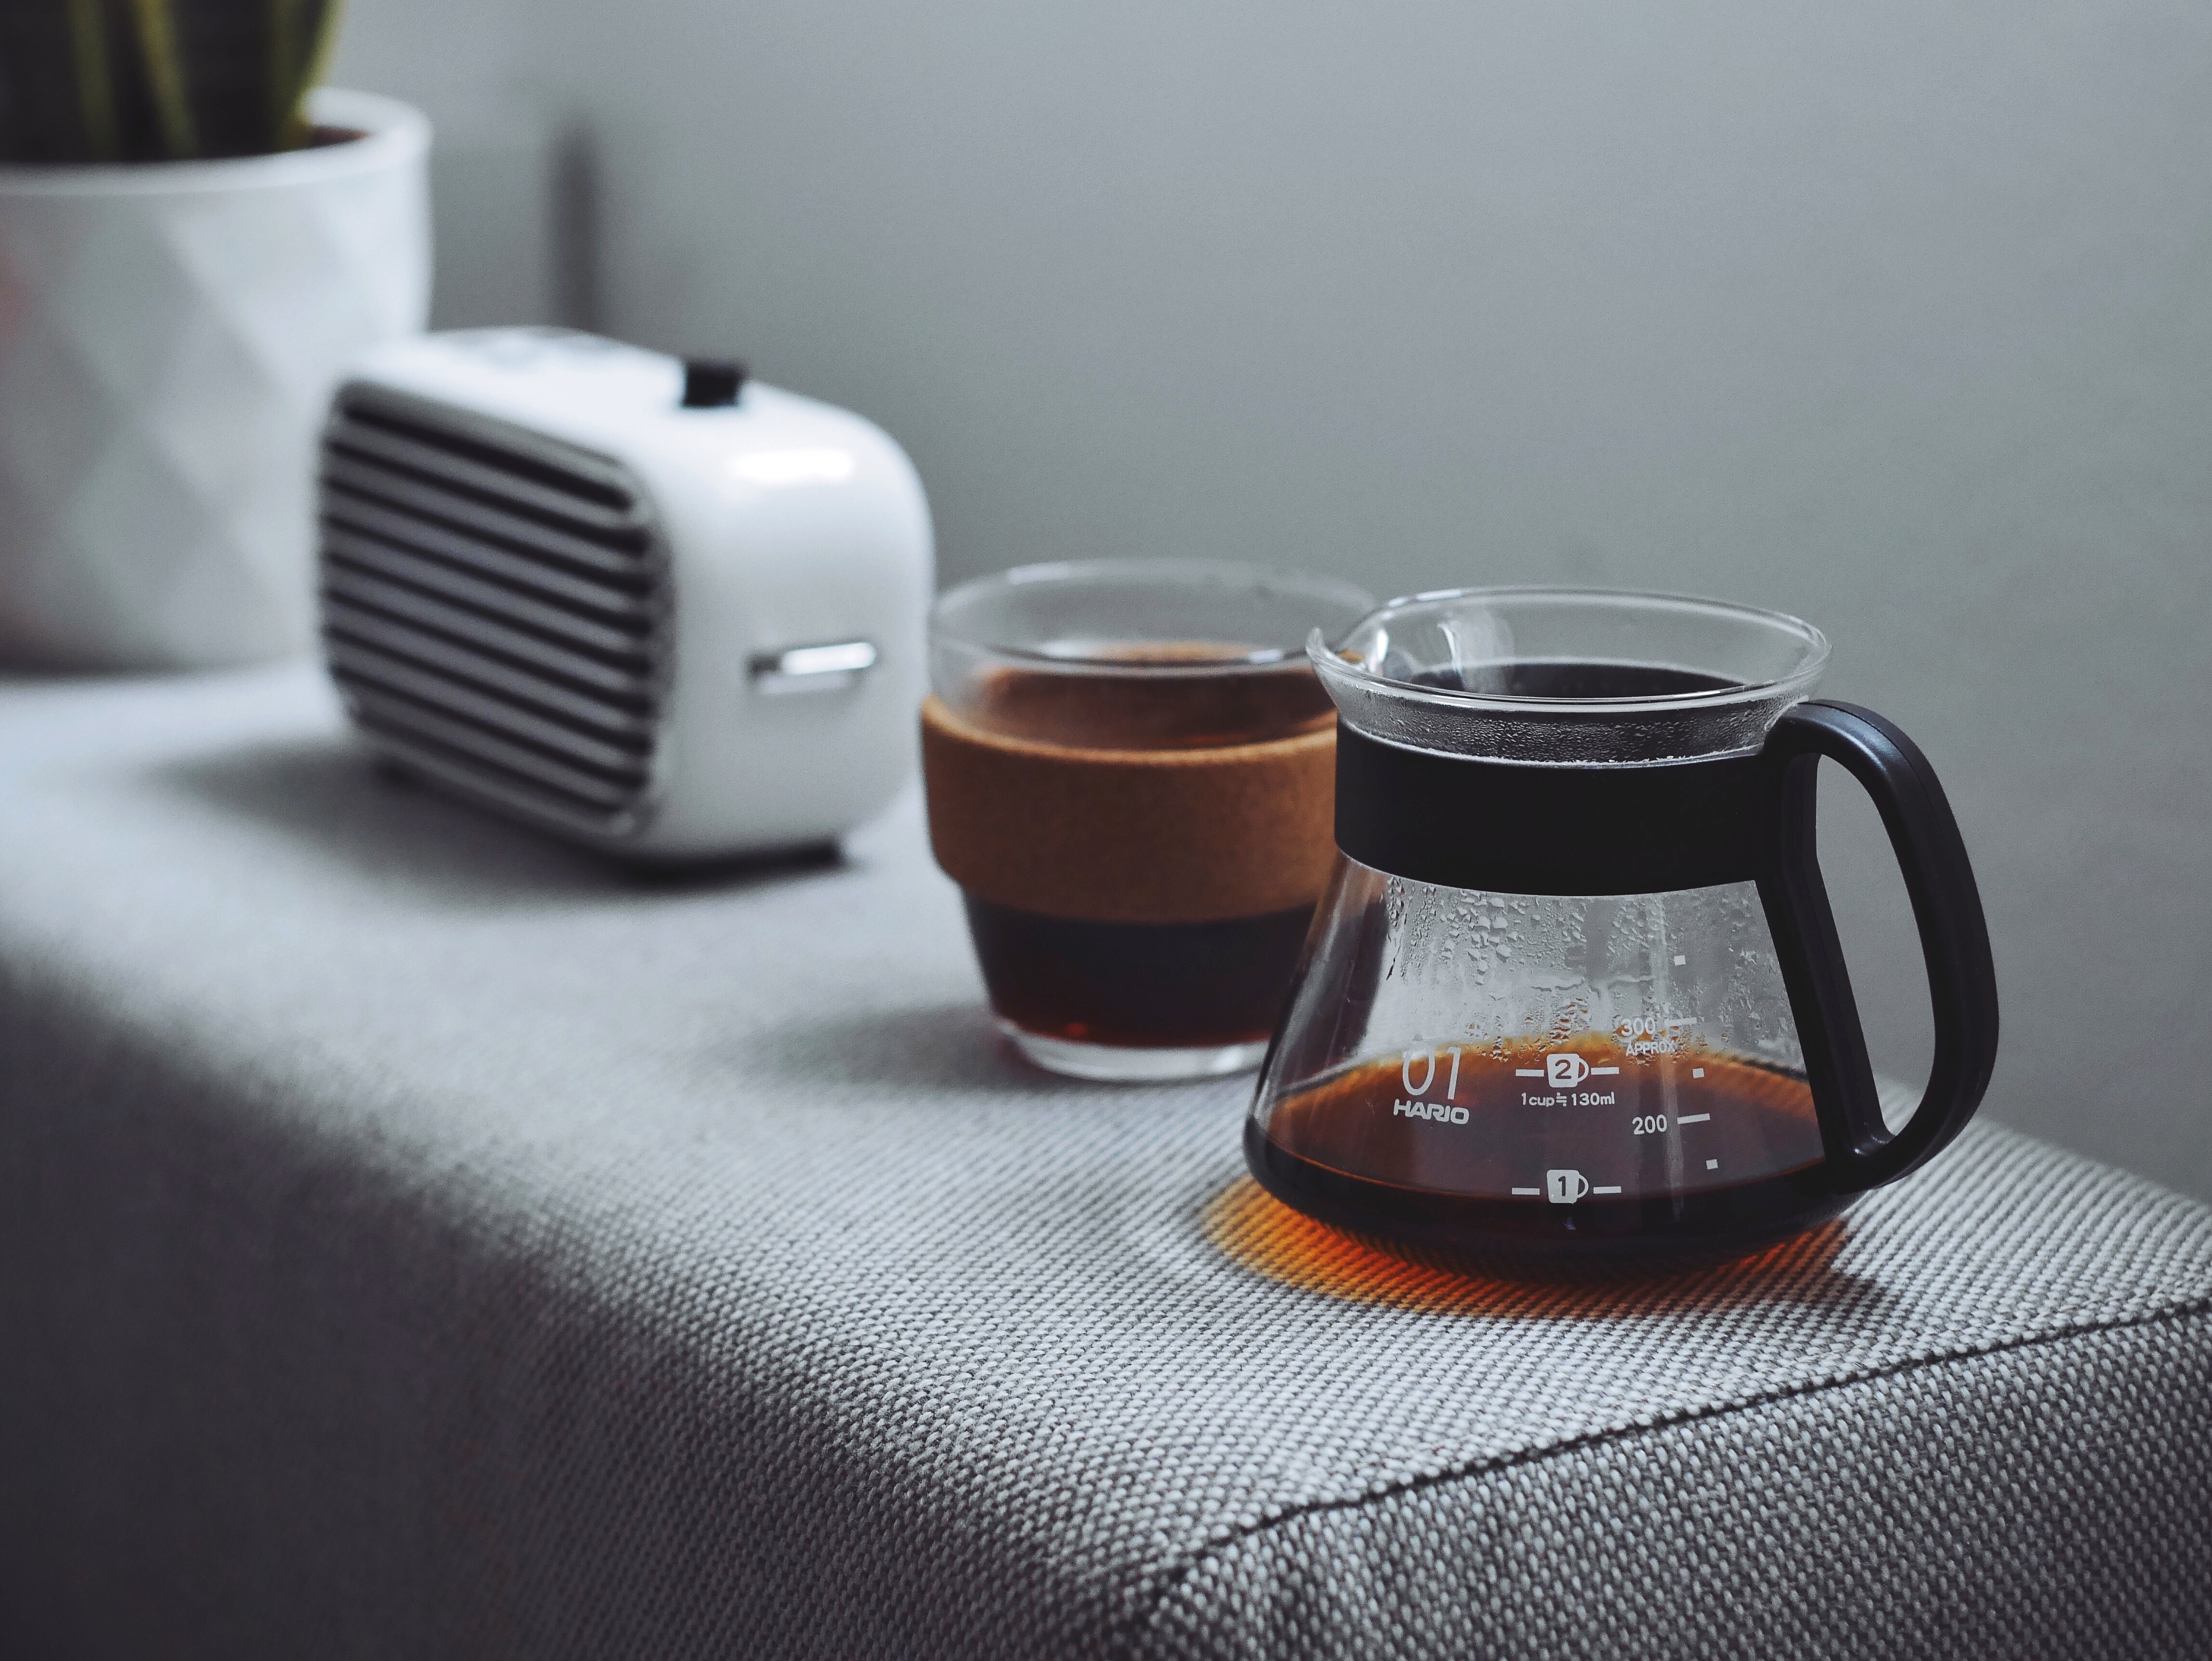 goran-ivos-coffee-pot-unsplash